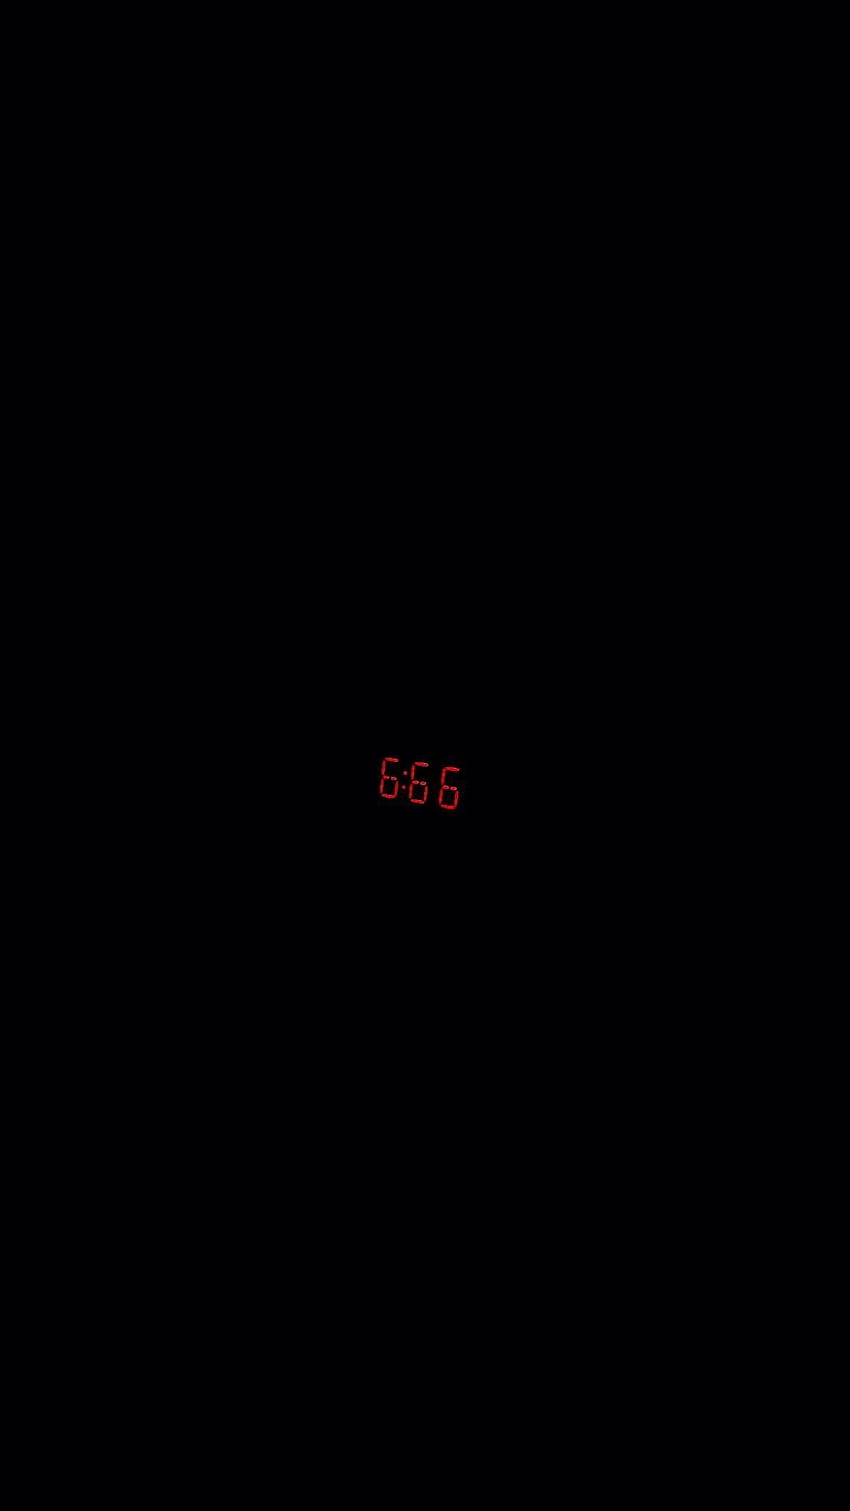 Hình nền aesthetic 666: Với những thiết kế độc đáo và thú vị, bộ sưu tập hình nền aesthetic 666 sẽ làm thỏa mãn sự ưa thích của các bạn trẻ yêu thích thể hiện cá tính và phong cách riêng.